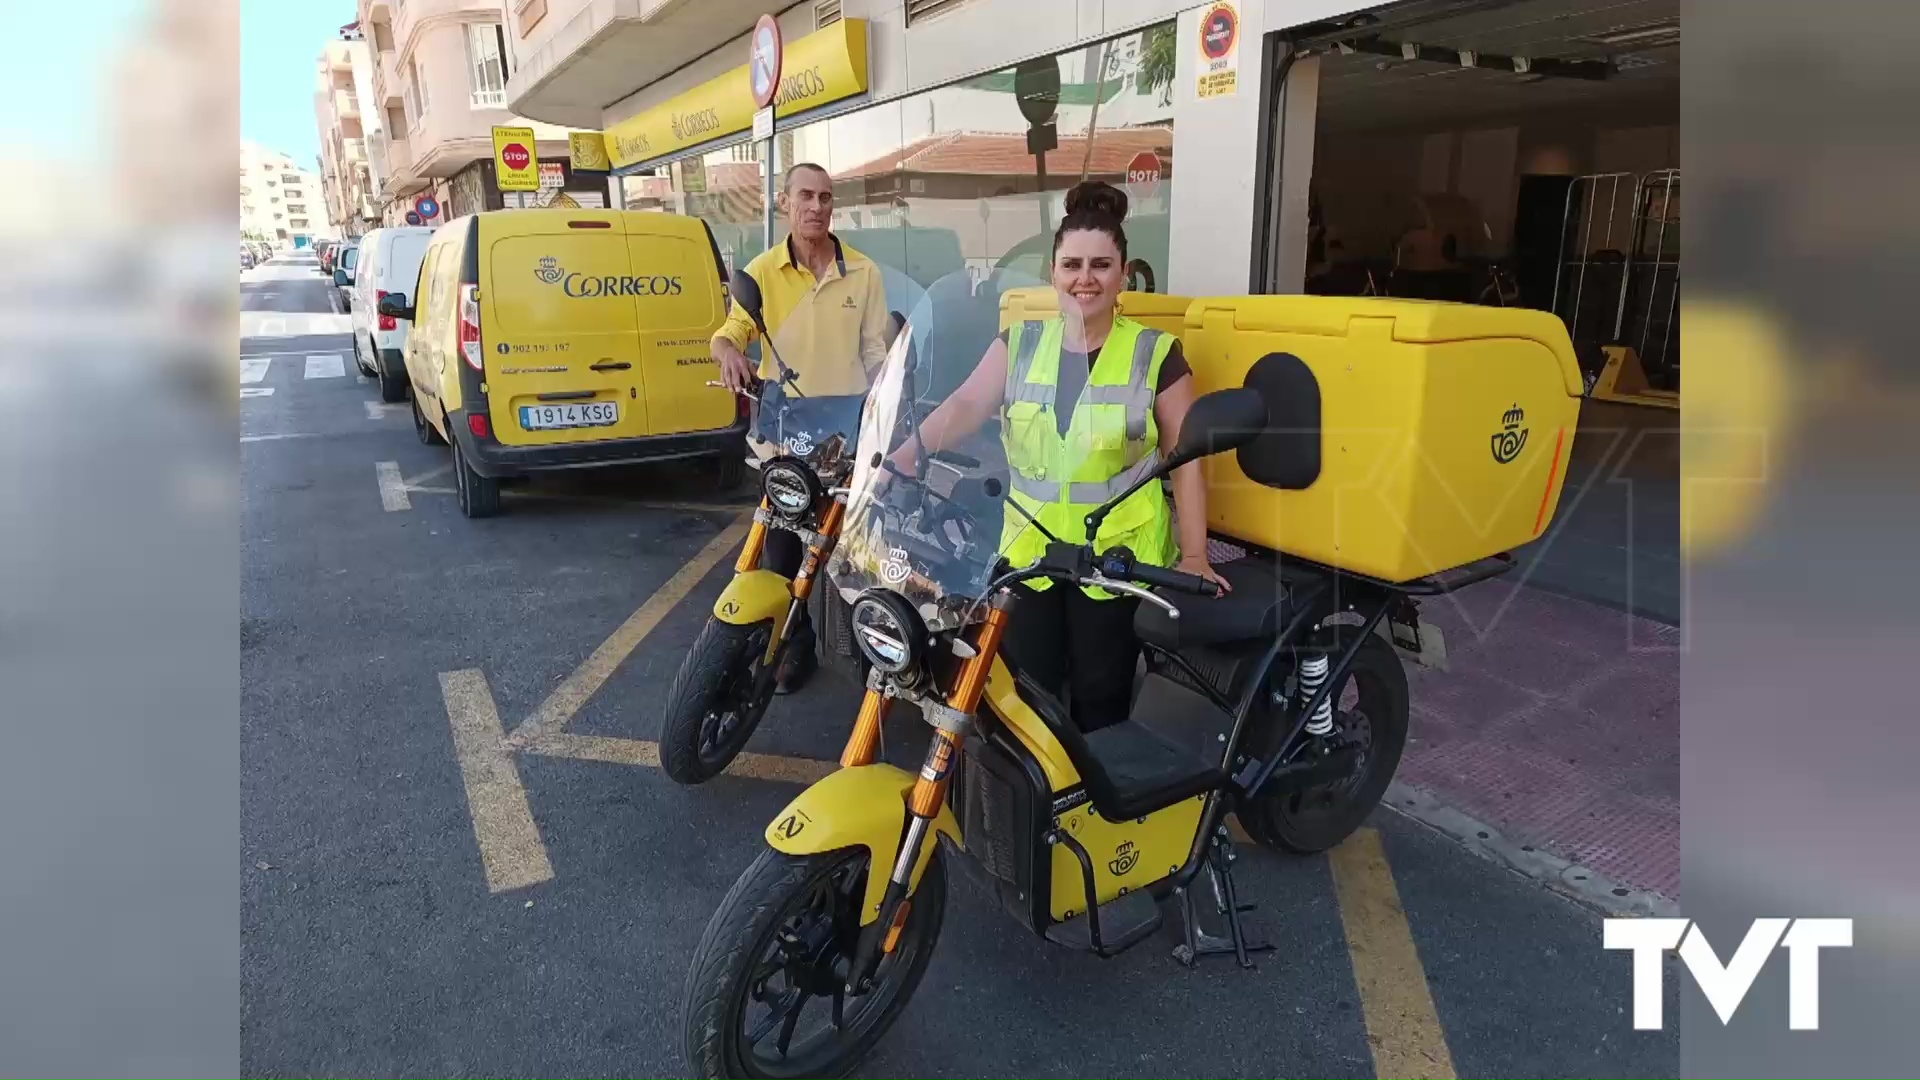 Imagen de Correos amplía en Torrevieja su flota de reparto ecológica con nuevas motos eléctricas